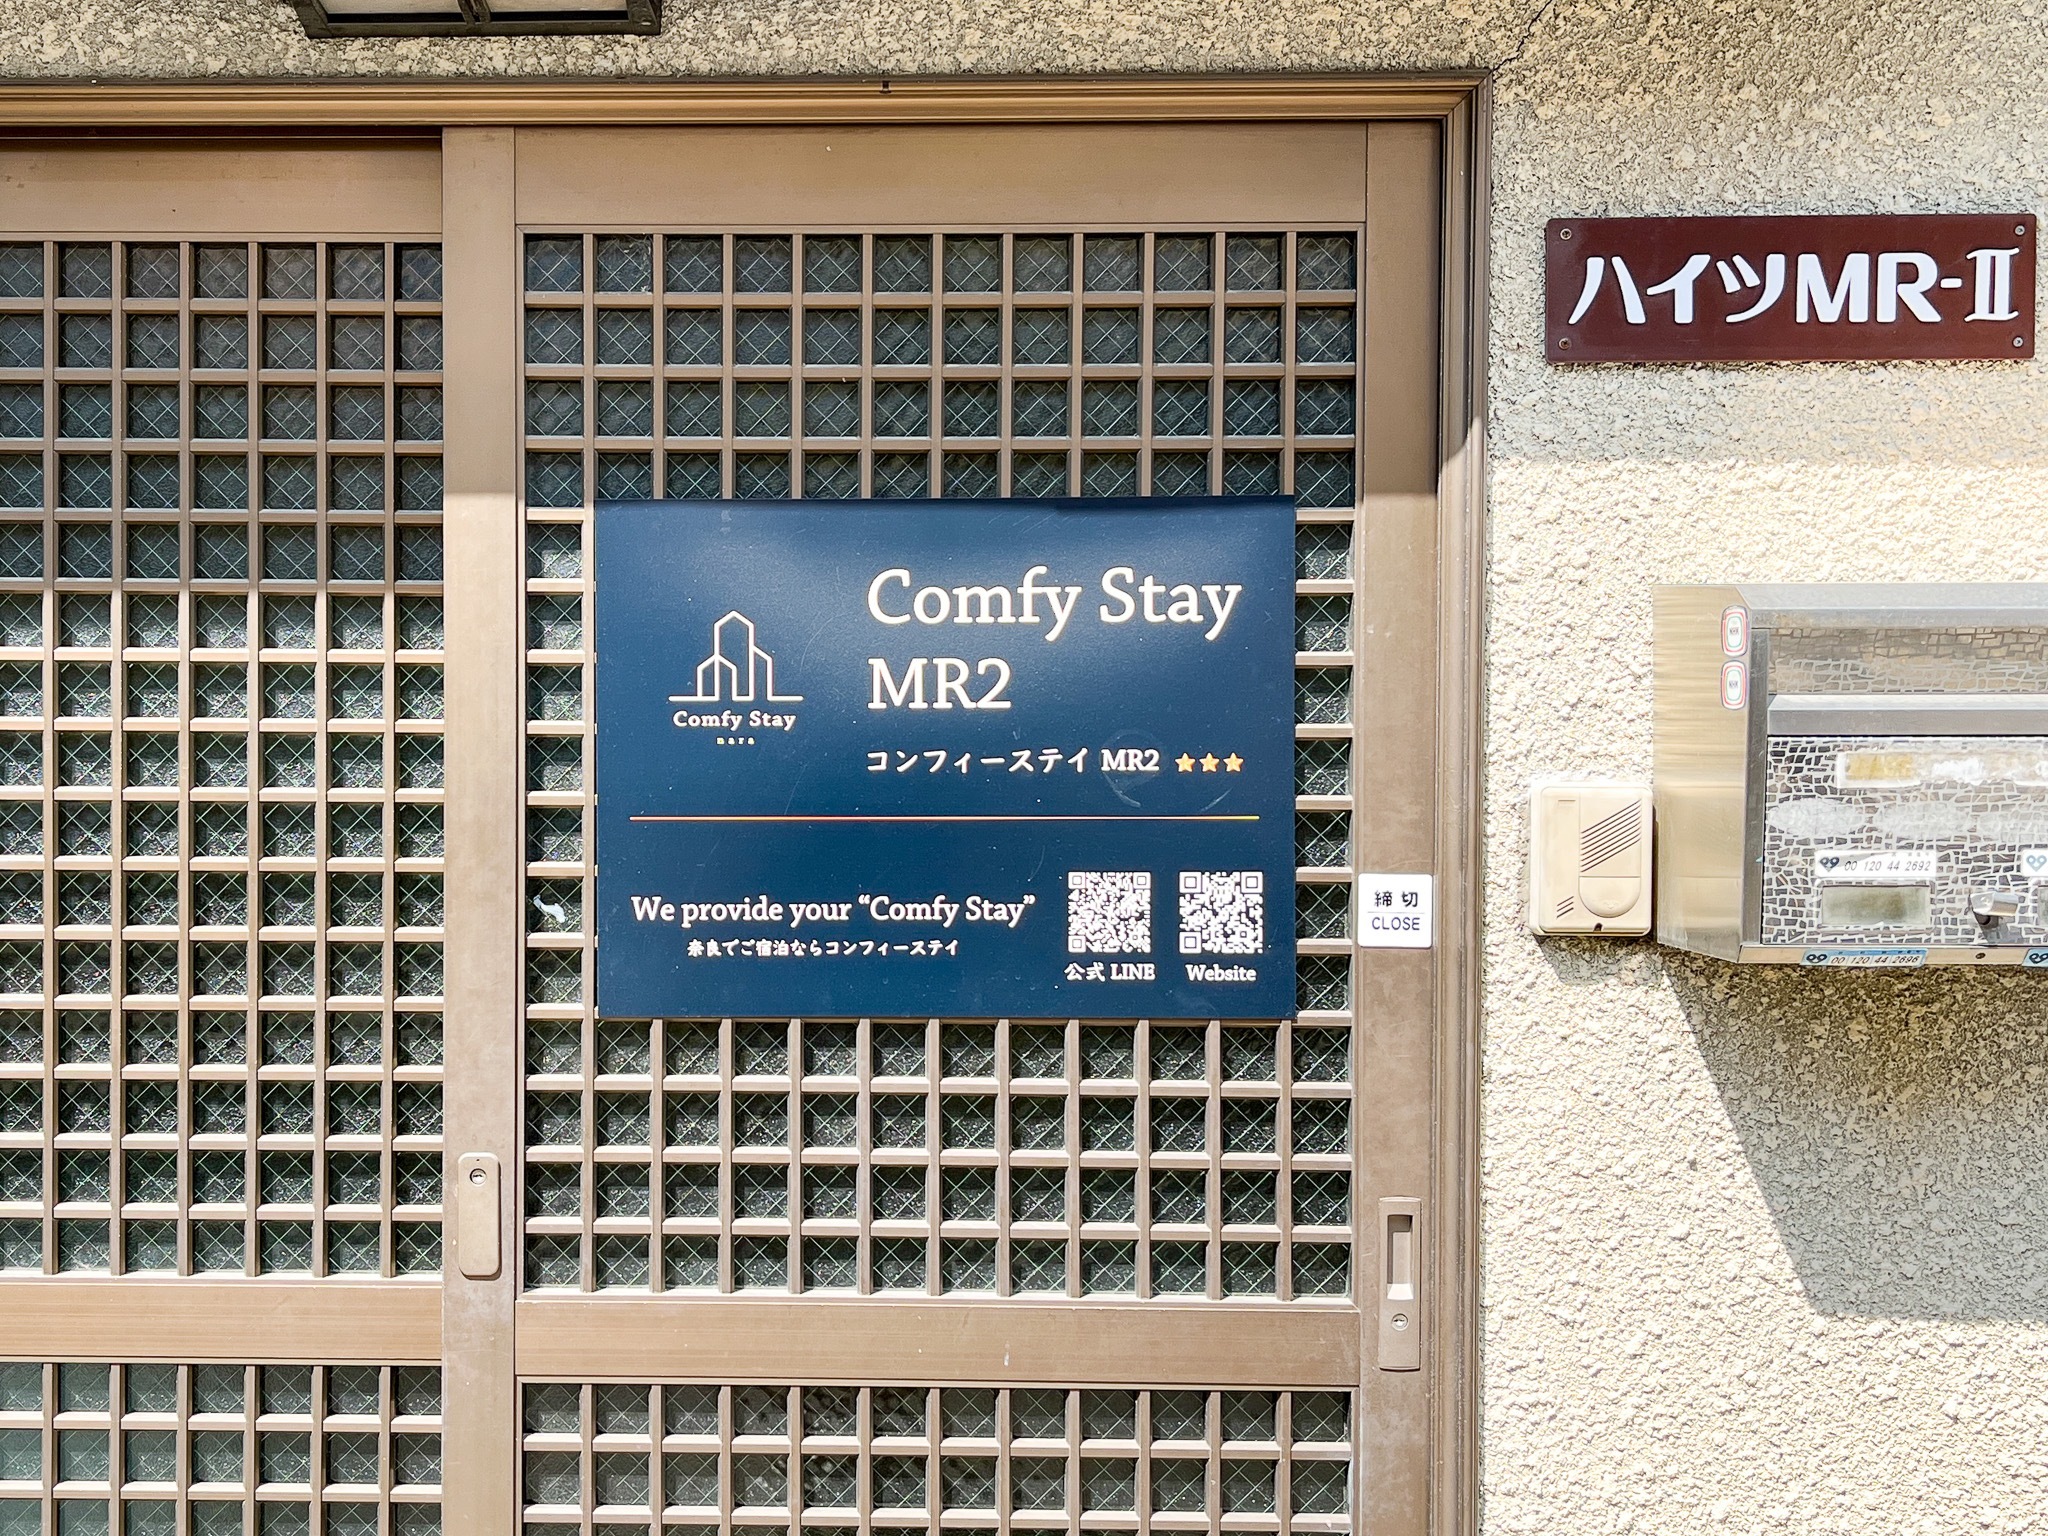 コンフィーステイMR2 102 : 奈良公園近く!改装済みバスルームの綺麗なお部屋